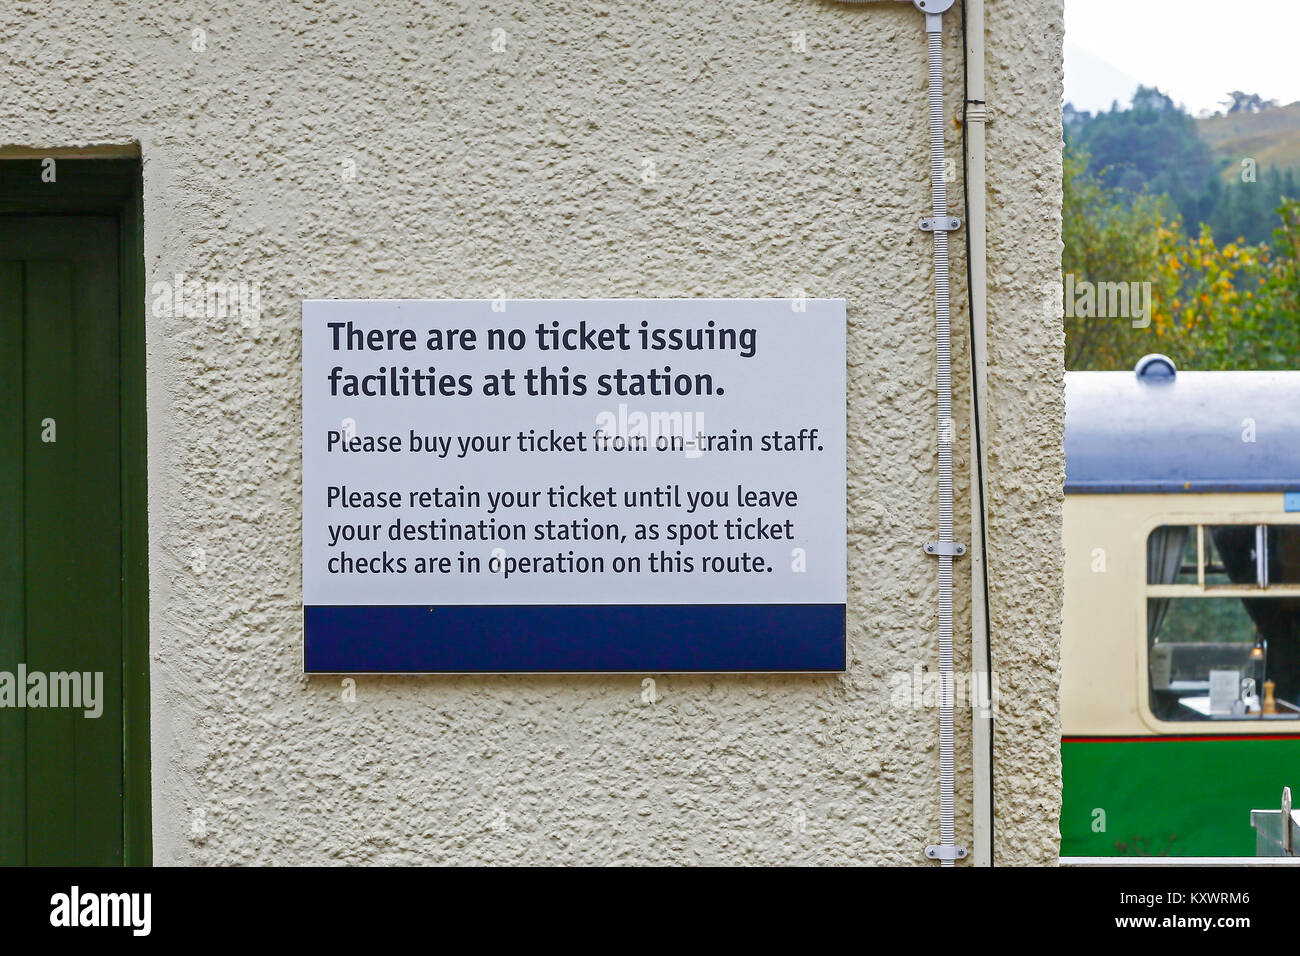 Un panneau ou un avis à Glenfinnan gare disent il n'y a pas d'installations d'émission de billets sur cette station, Glenfinnan, Ecosse, Royaume-Uni Banque D'Images